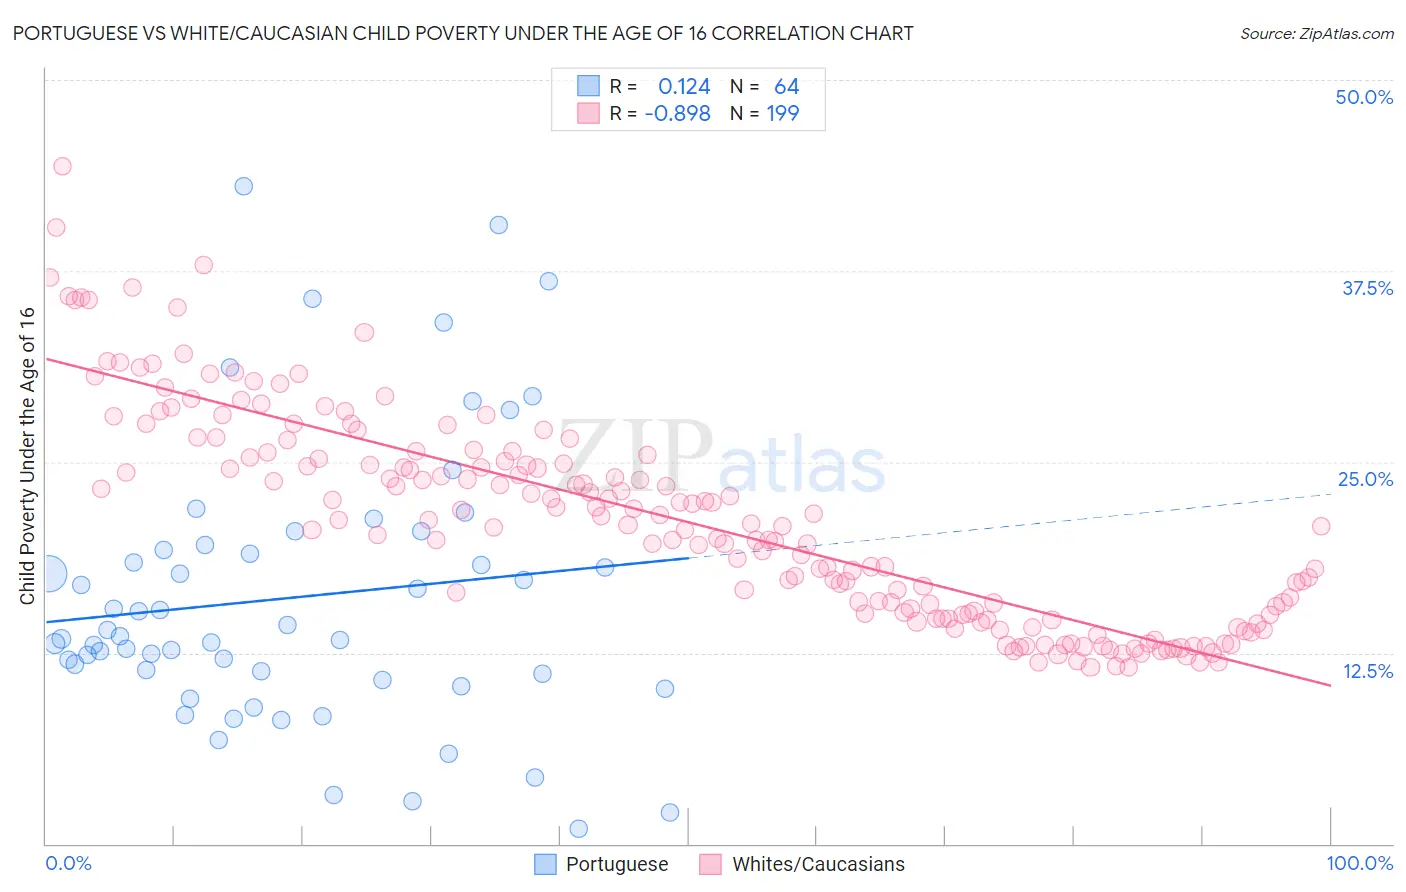 Portuguese vs White/Caucasian Child Poverty Under the Age of 16